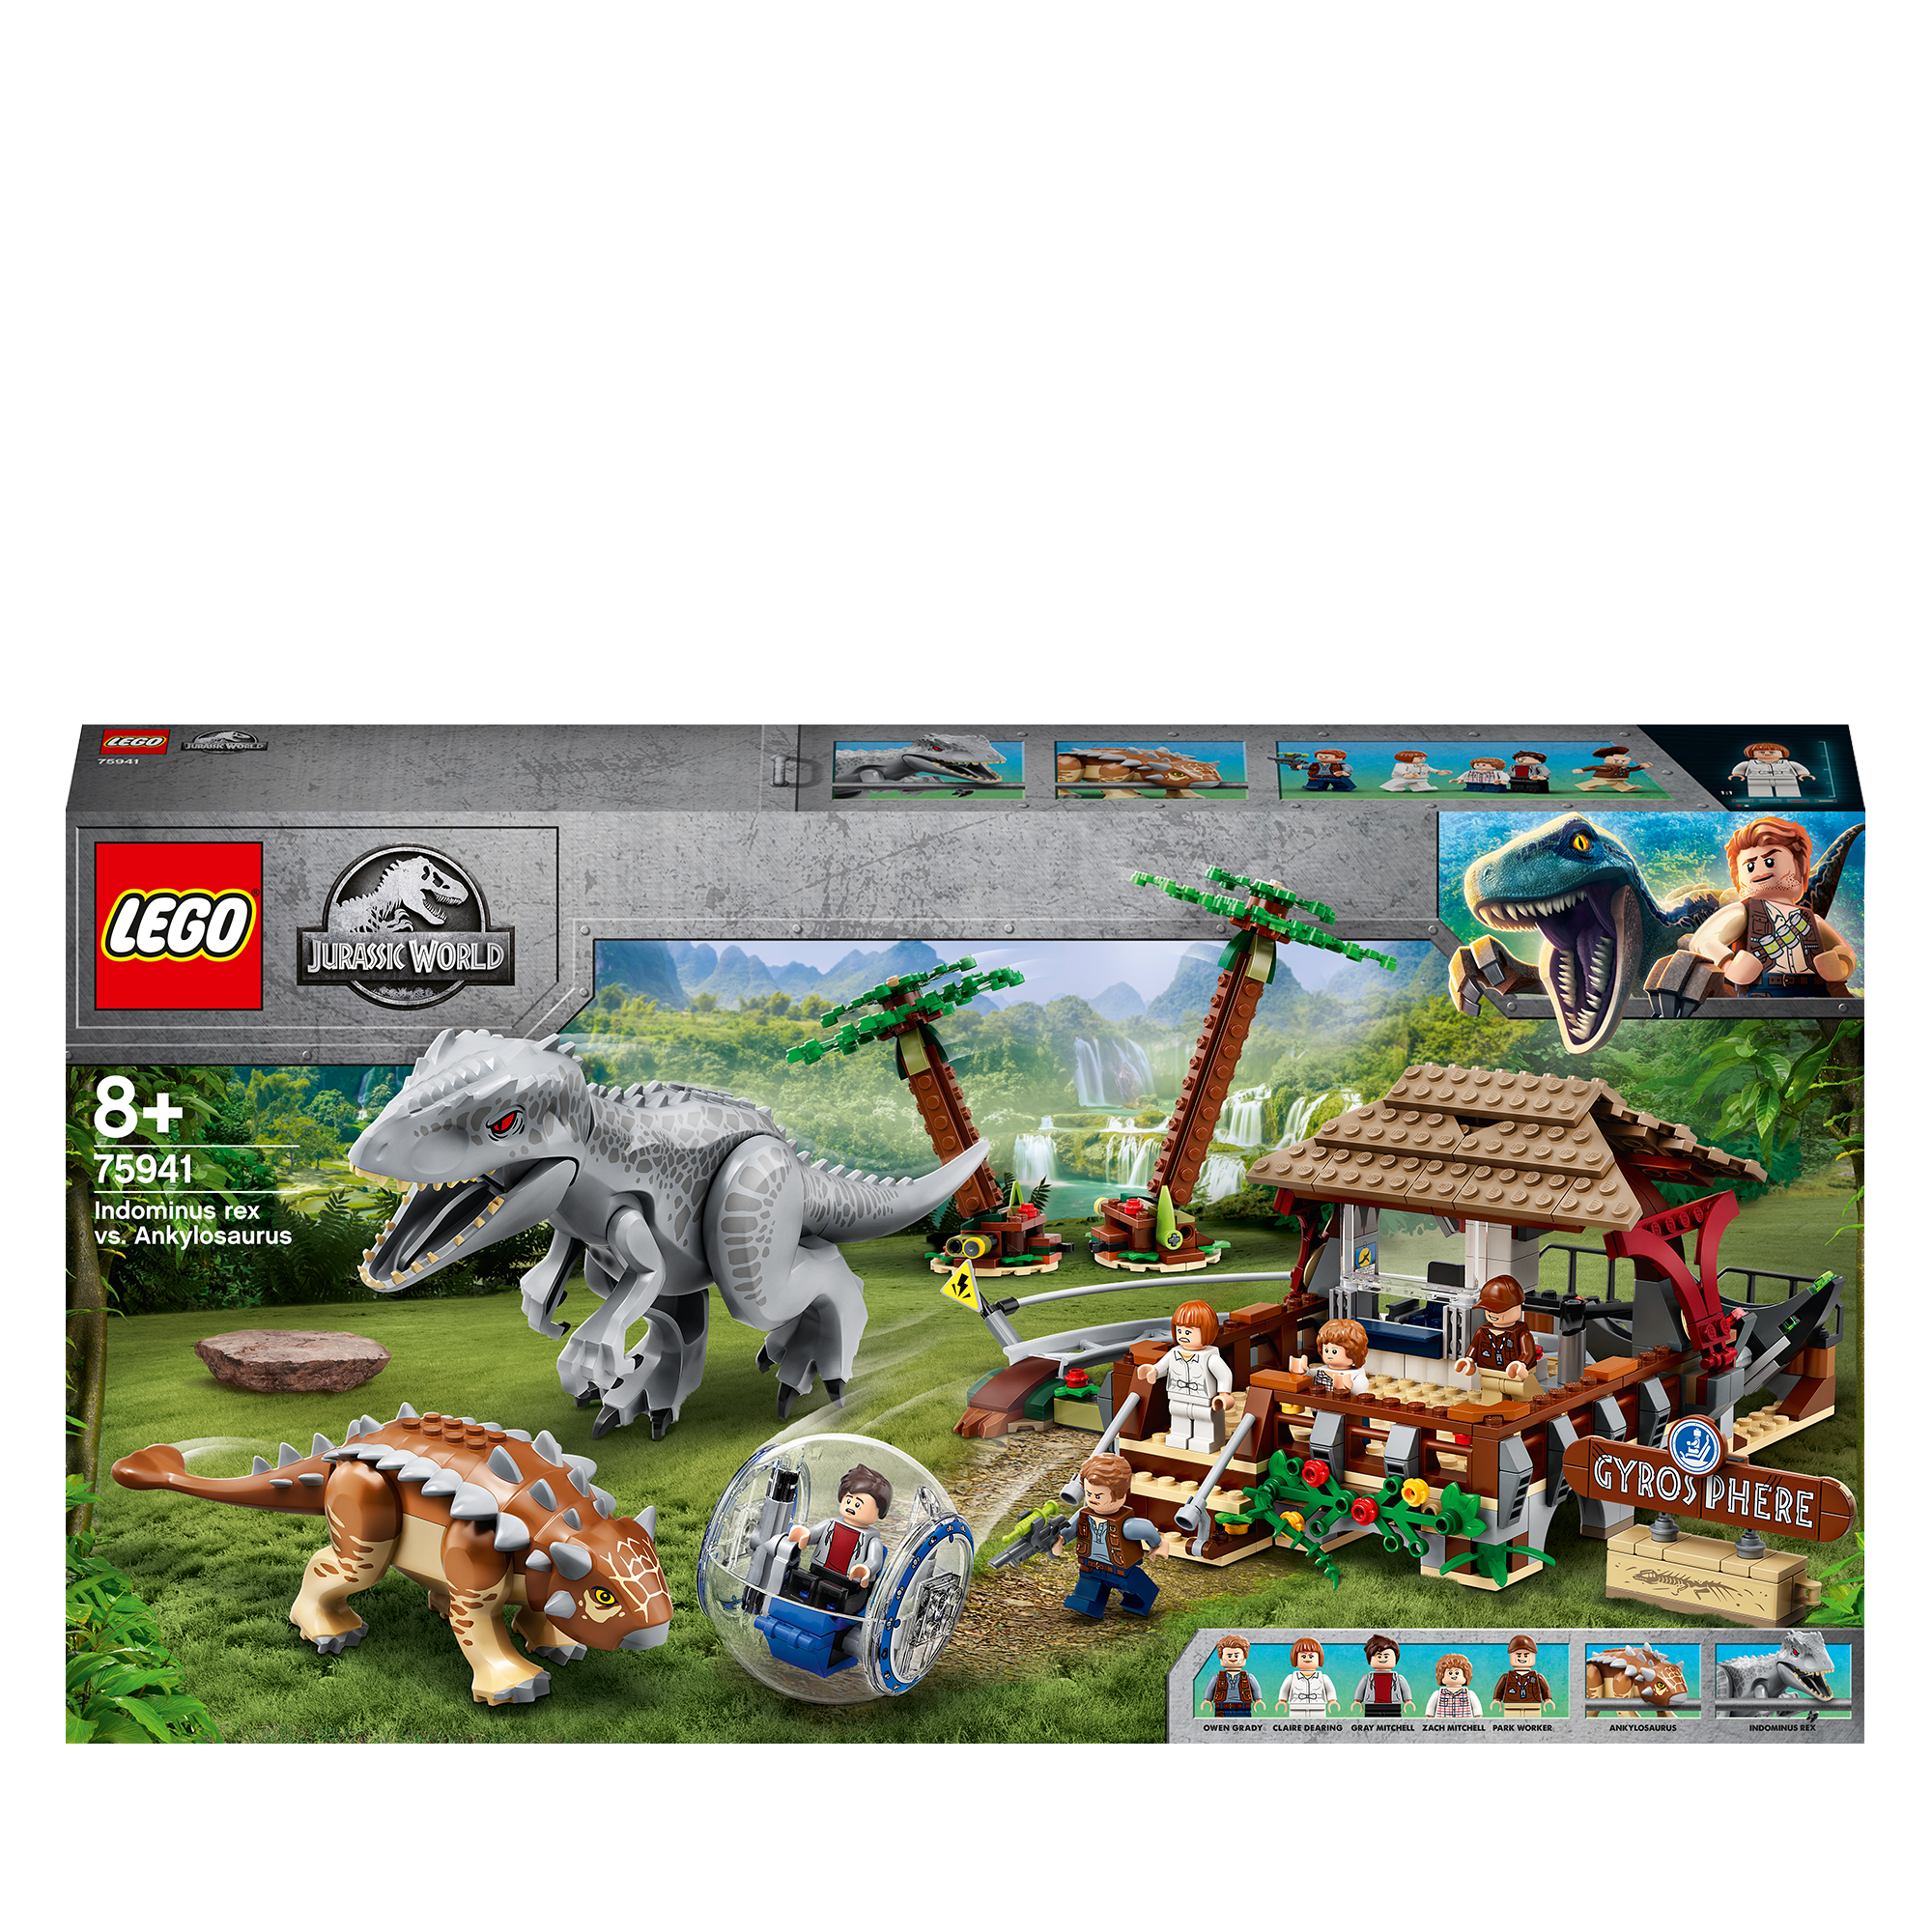 LEGO Jurassic World for PC Game Steam Key Region Free